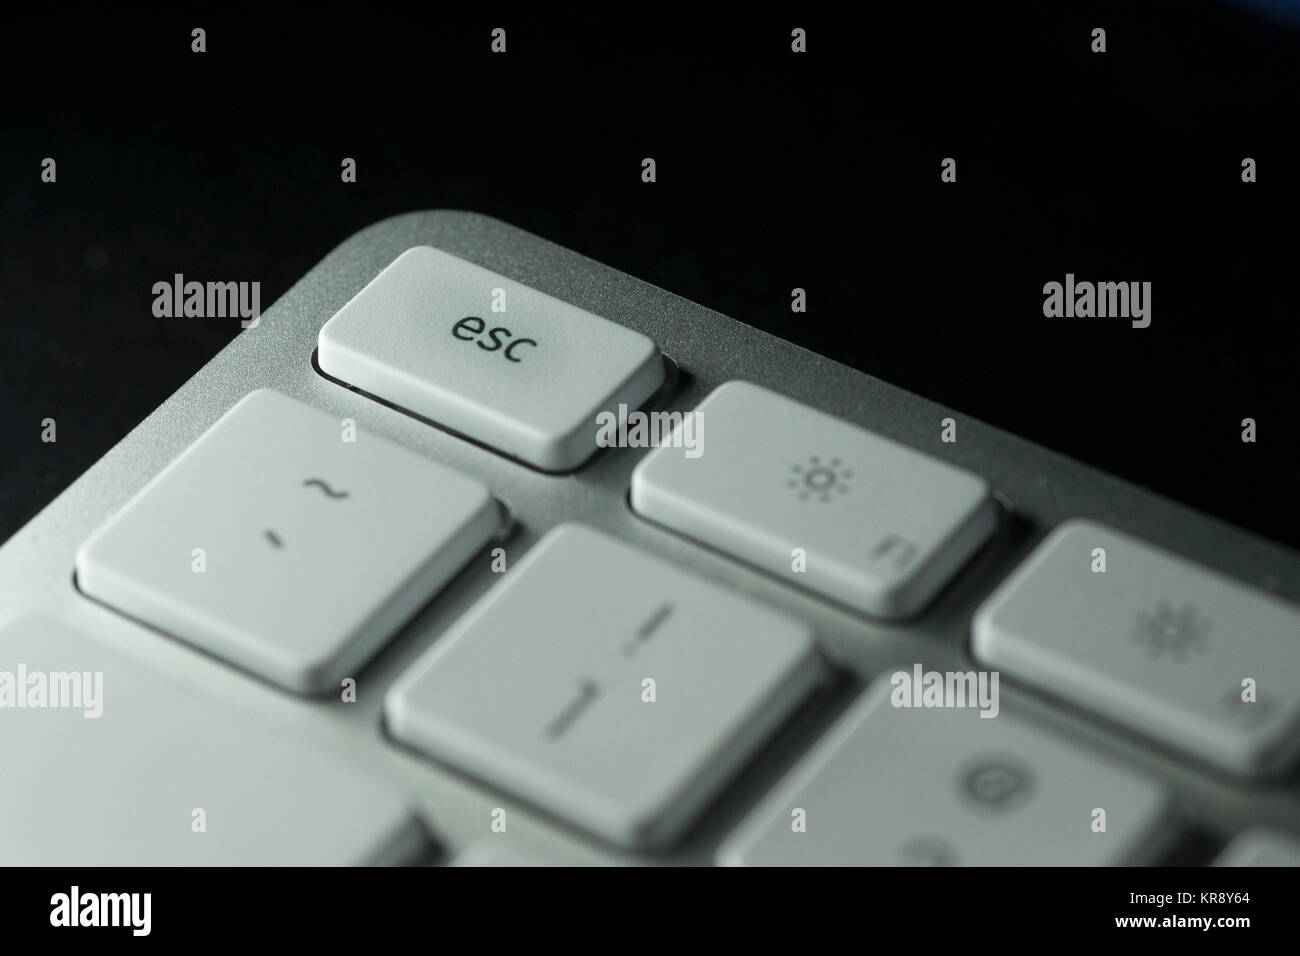 Vista dettagliata del tasto Esc sulla tastiera del computer con tasti bianchi su sfondo scuro Foto Stock